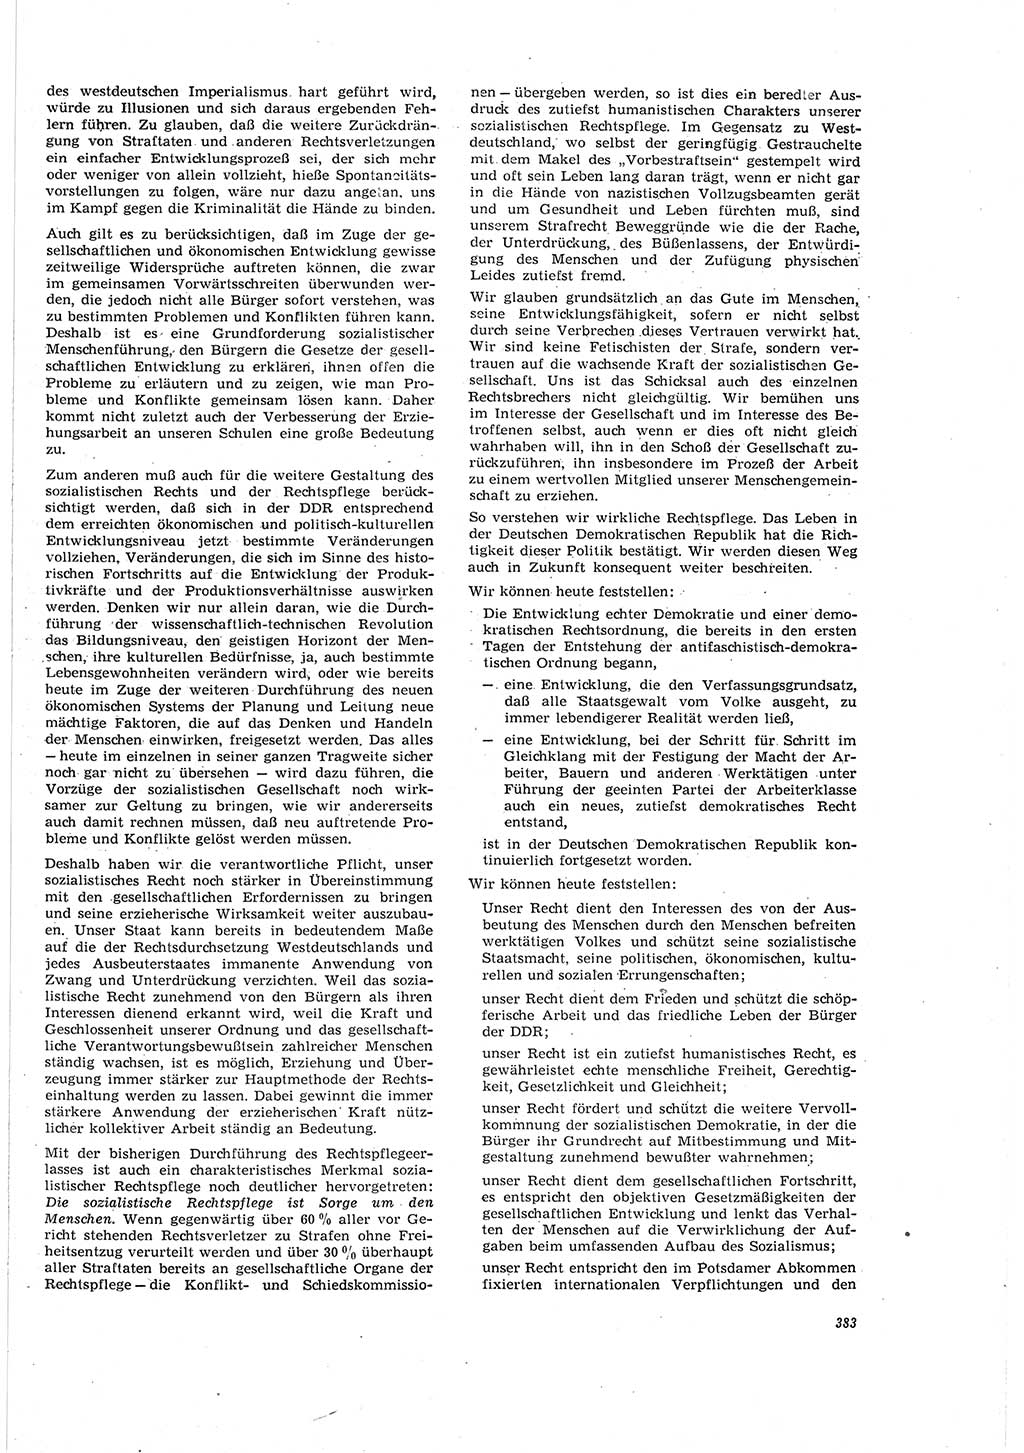 Neue Justiz (NJ), Zeitschrift für Recht und Rechtswissenschaft [Deutsche Demokratische Republik (DDR)], 20. Jahrgang 1966, Seite 383 (NJ DDR 1966, S. 383)